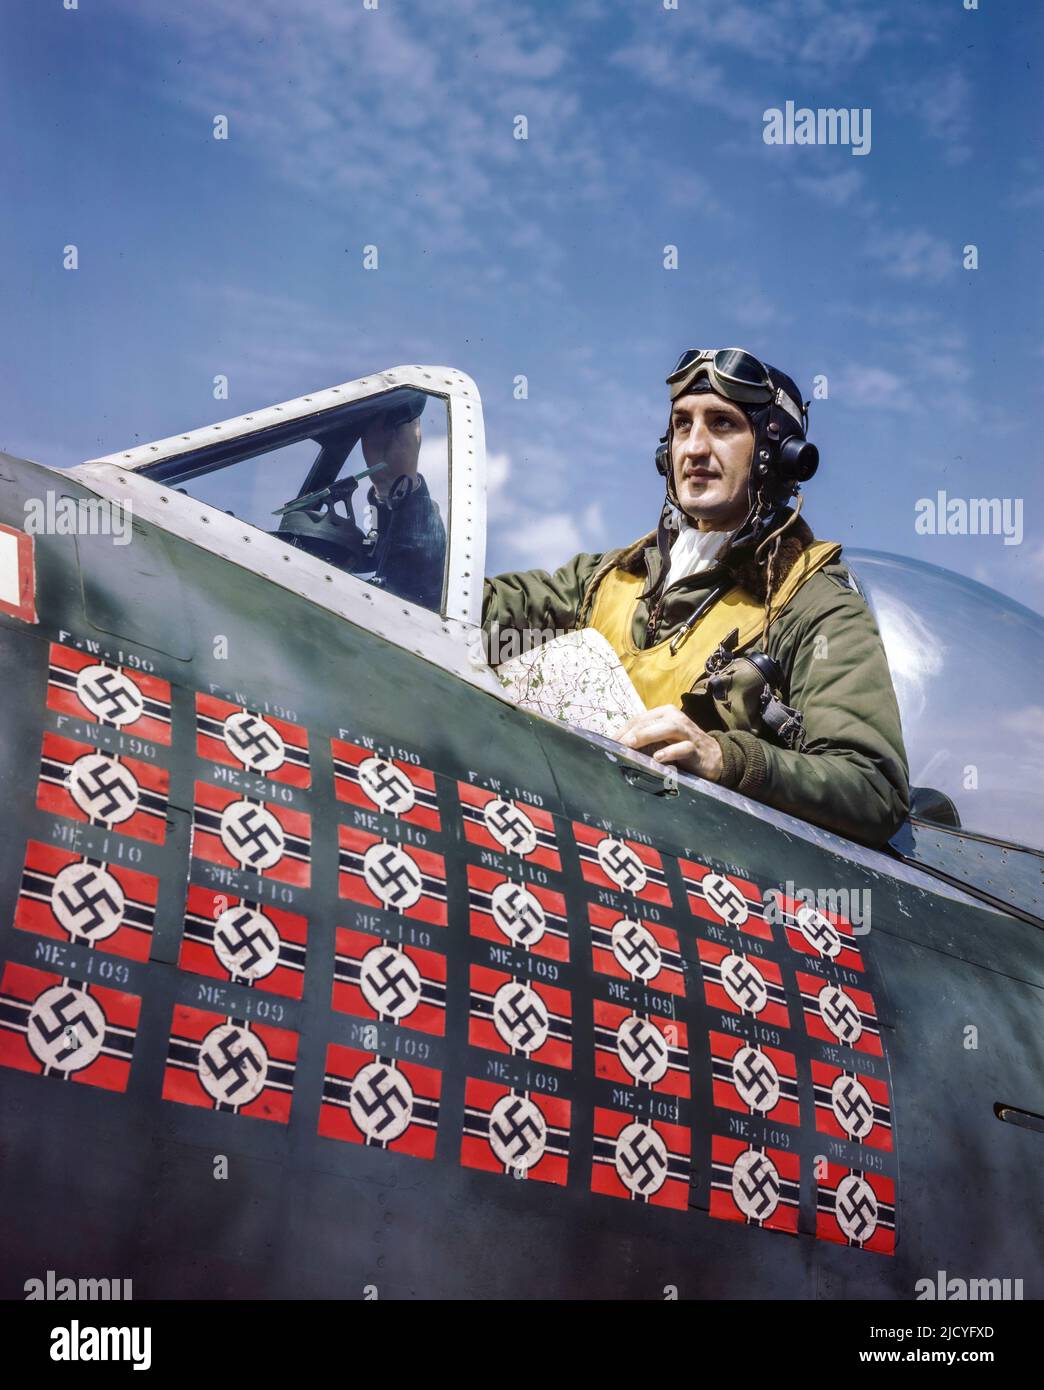 WW2 American Fighter Ace USAAF Francis S. Gabreski im Cockpit seines P-47 Thunderbolt. Foto vom 1944. Juli, wie die 28 Hakenkreuzsieg-Markierung zeigt - Gabreski erzielte am 5. Juli seine 28. Tötung und wurde am 20. Juli gefangen genommen. Datum Juli 1944 Zweiten Weltkrieg Zweiten Weltkrieg Stockfoto